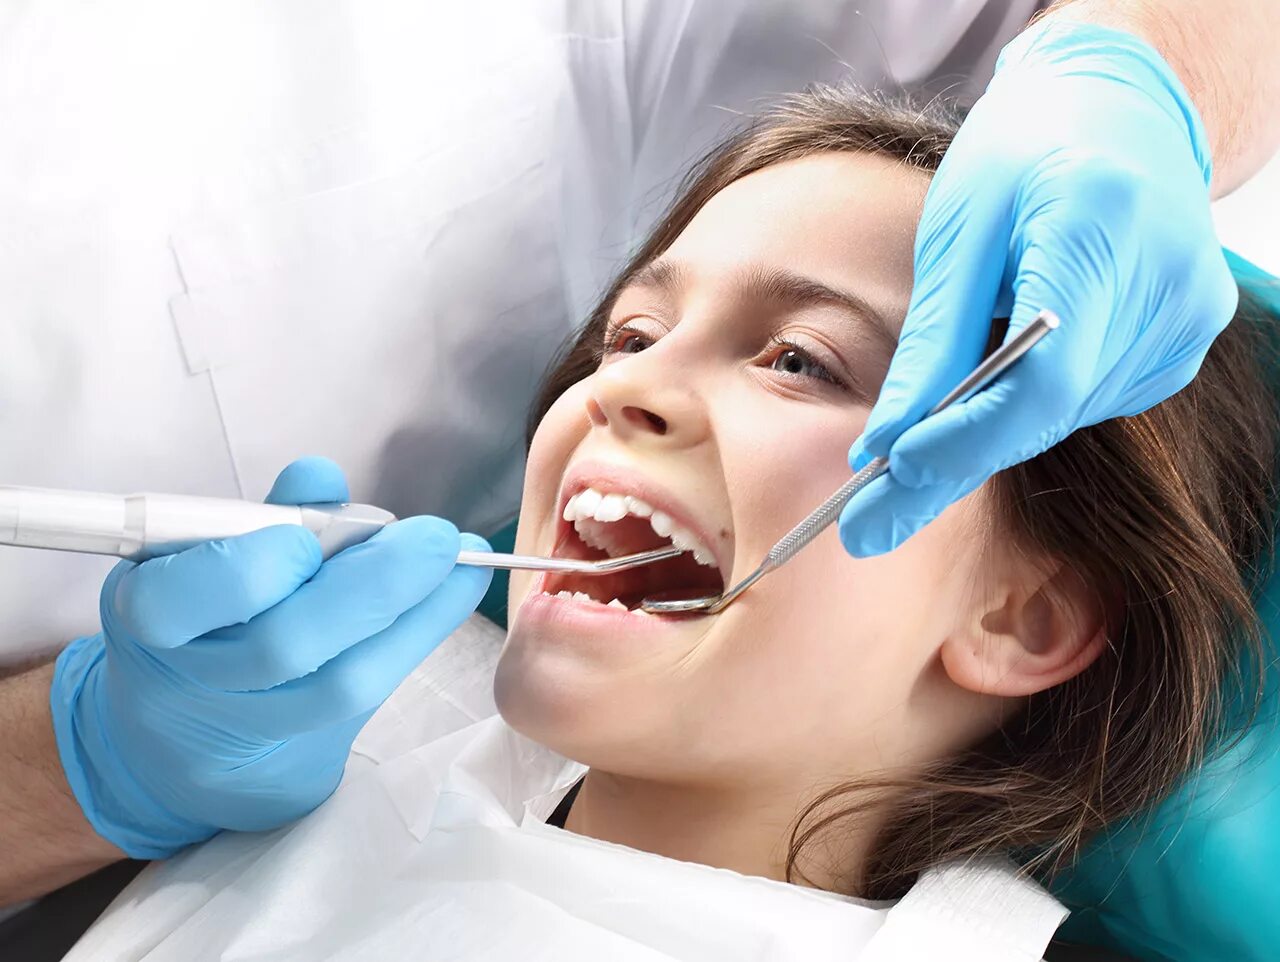 Зубы стоматолог. Профессиональная гигиена полости рта. Профессиональная чистка зубов детям. Профессиональная гигиена зубов у детей.